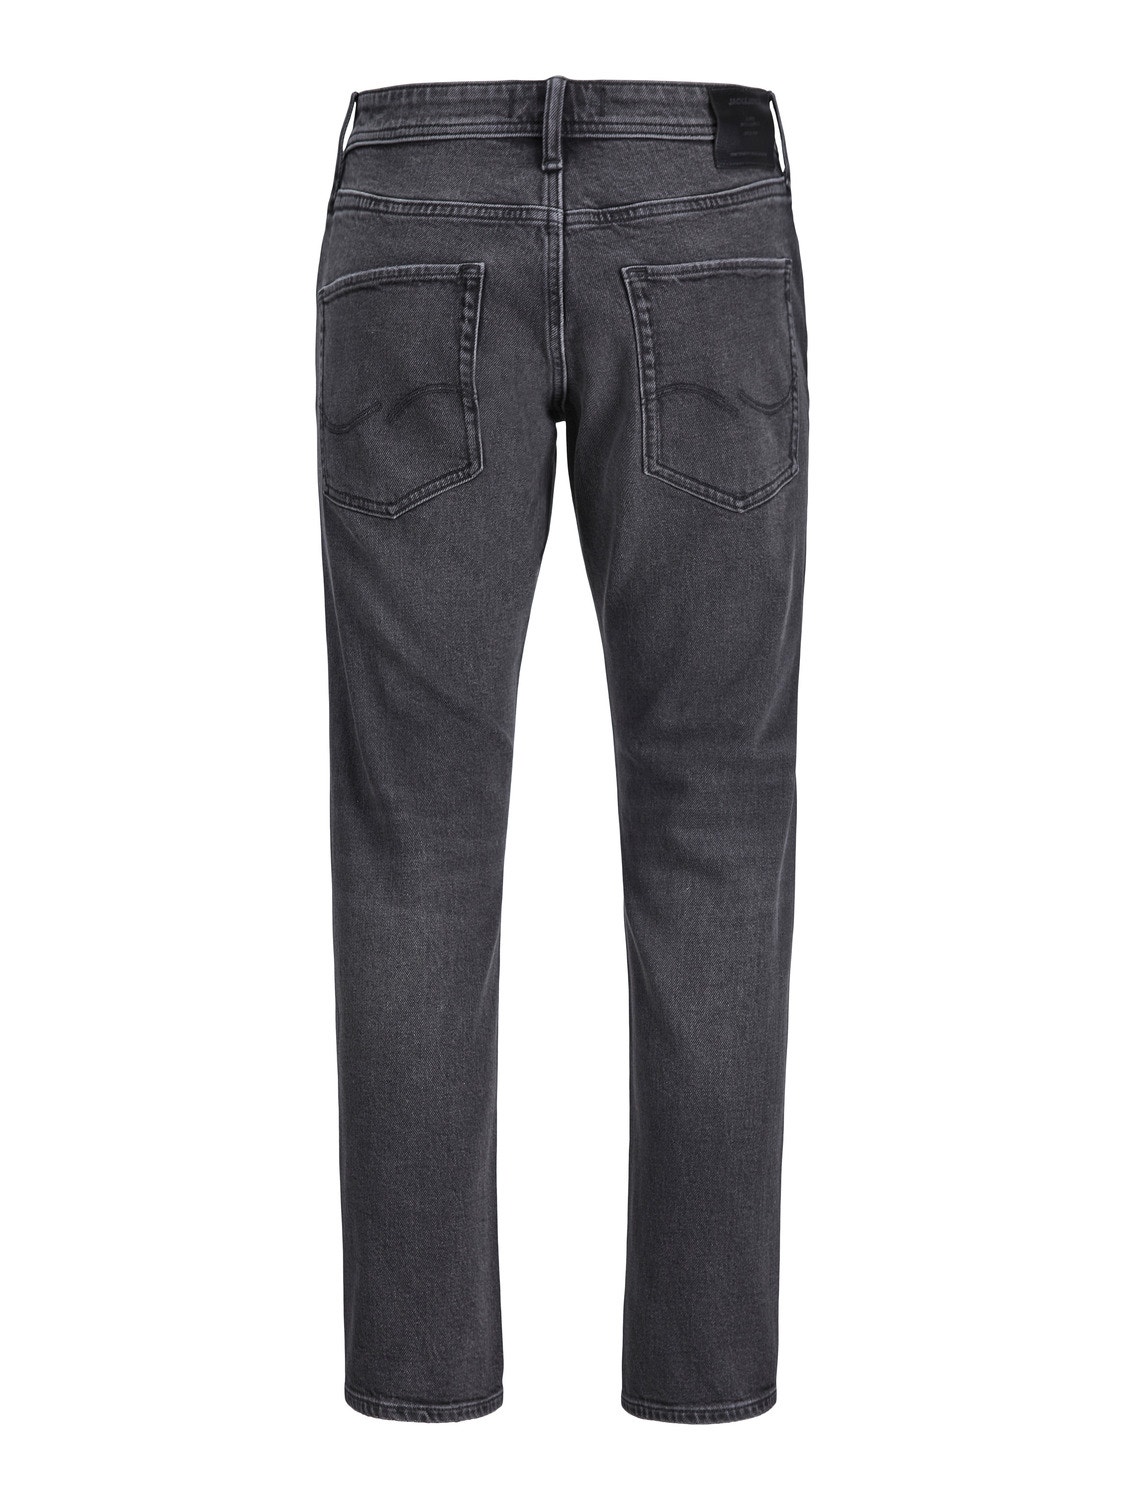 Jack & Jones Tapered fit - Cropped Jeans -Black Denim - 12243673